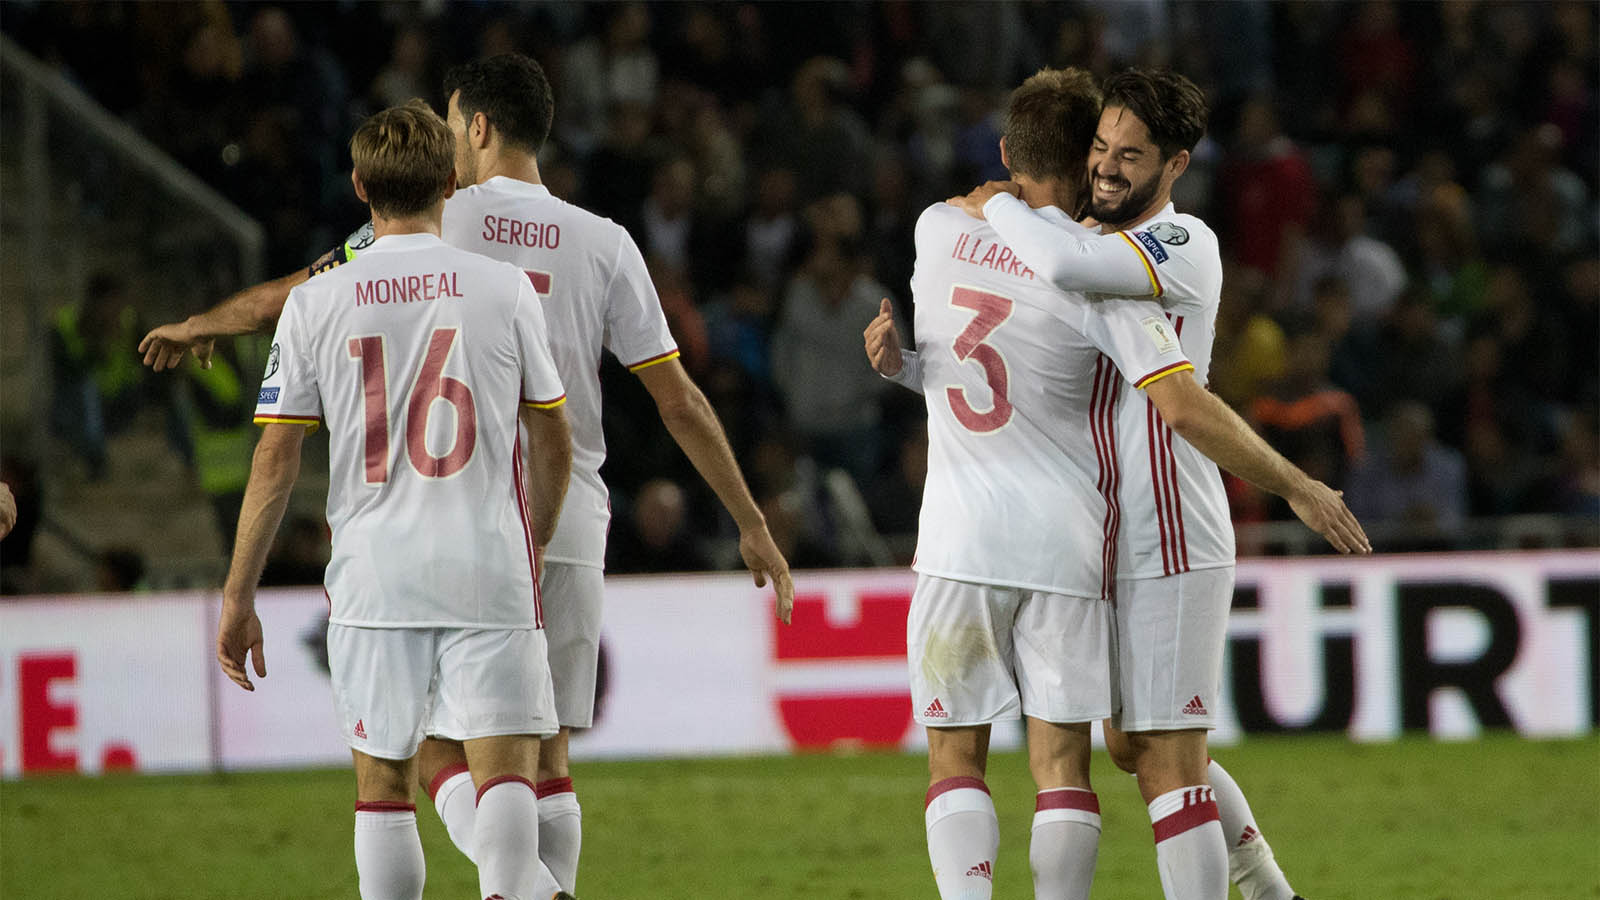 שחקני נבחרת ספרד חוגגים לאחר הניצחון על נבחרת ישראל במוקדמות המונדיאל (צילום: יונתן זינדל/ פלאש 90)